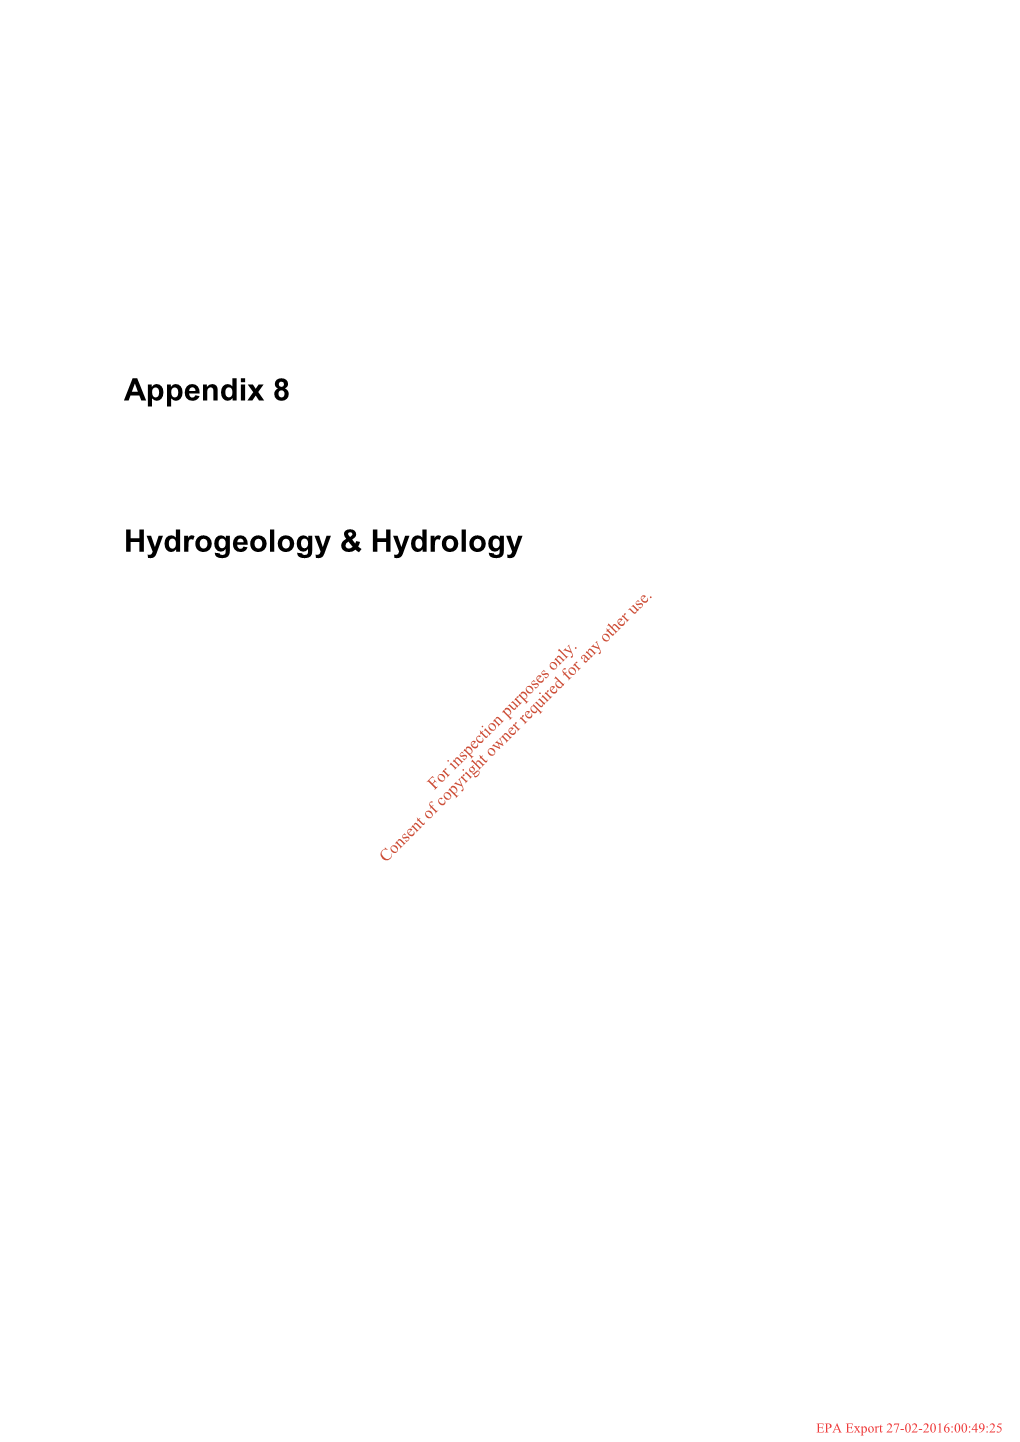 Appendix 8 Hydrogeology & Hydrology